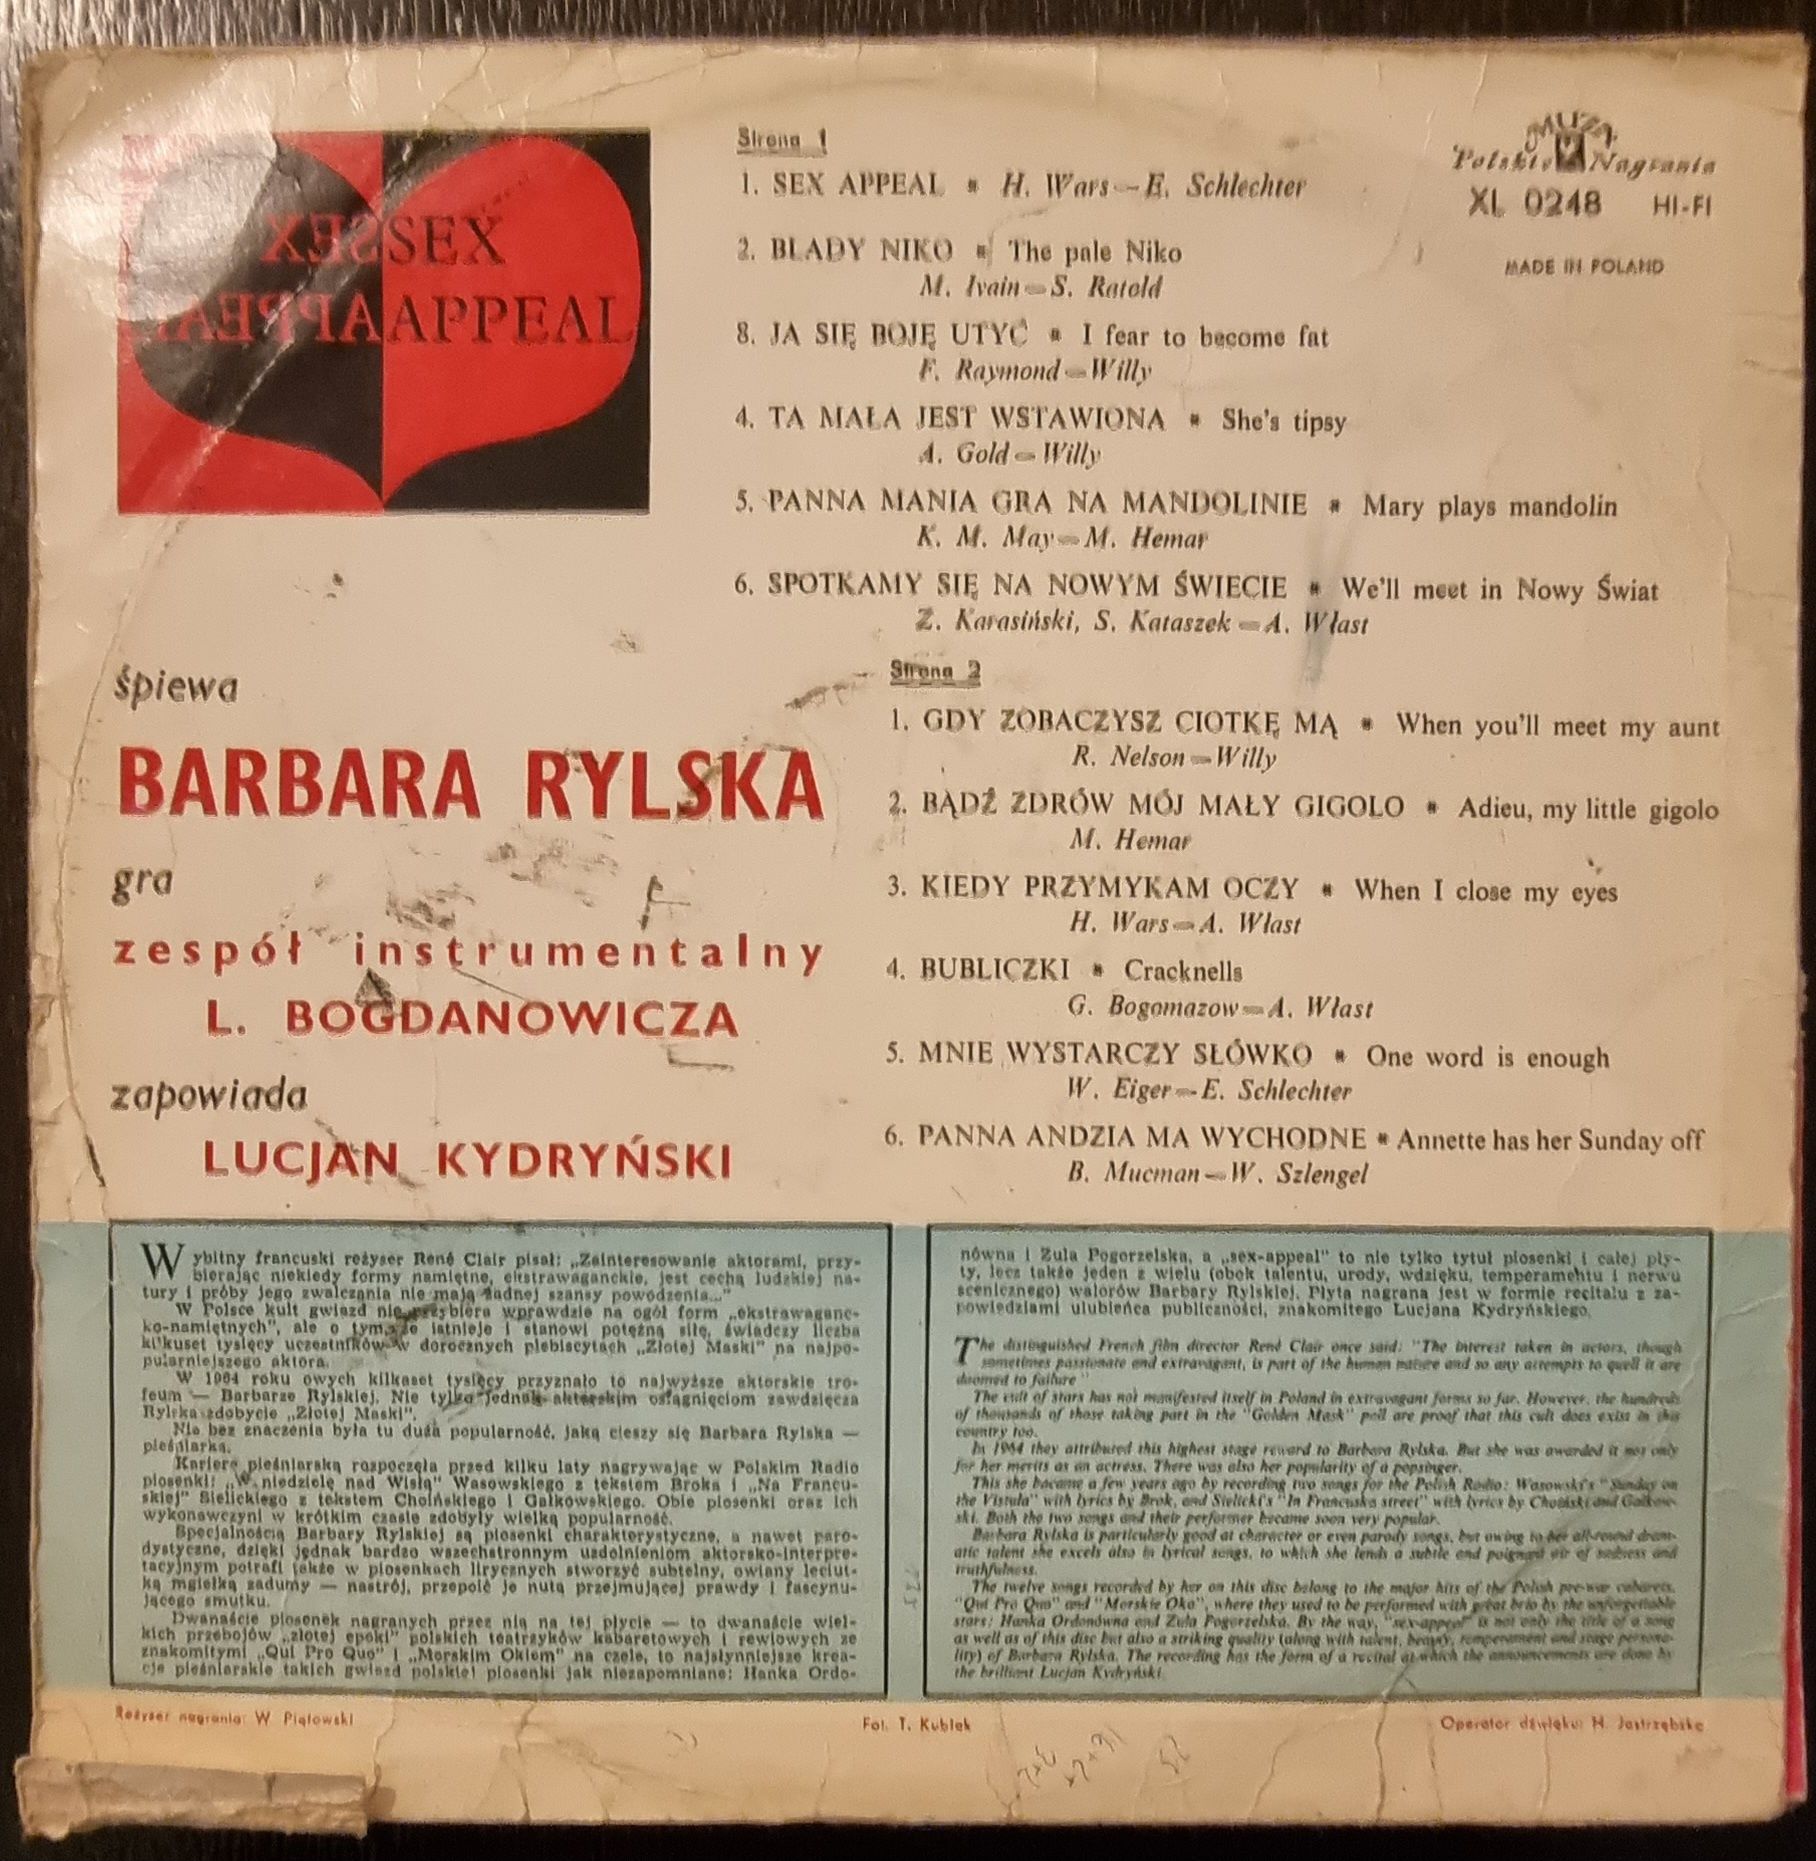 Barbara Rylska - Sexappeal